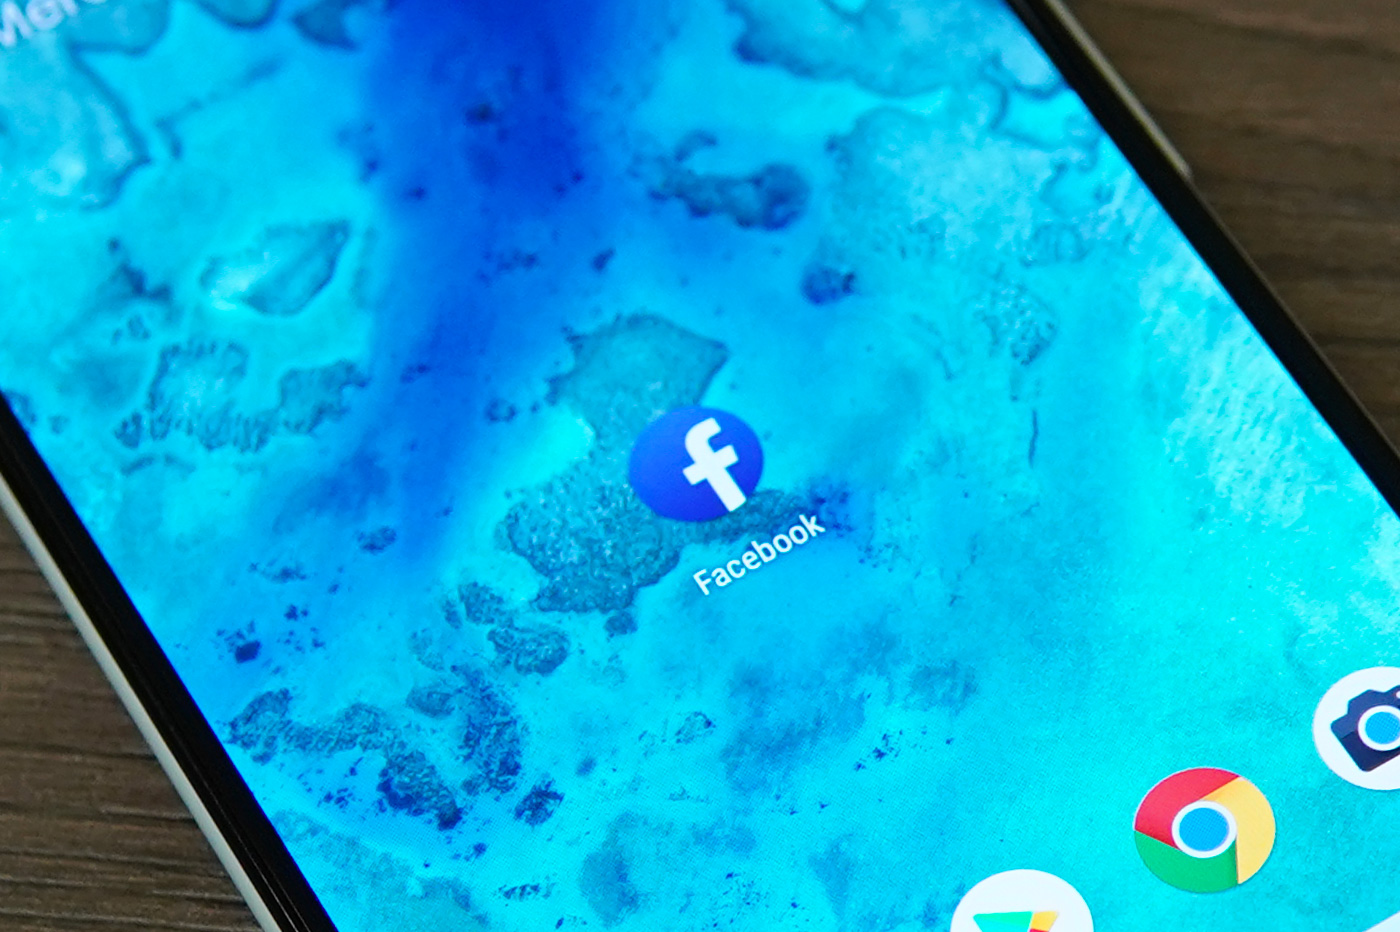 Facebook a payé des utilisateurs pour profiter de leurs données personnelles